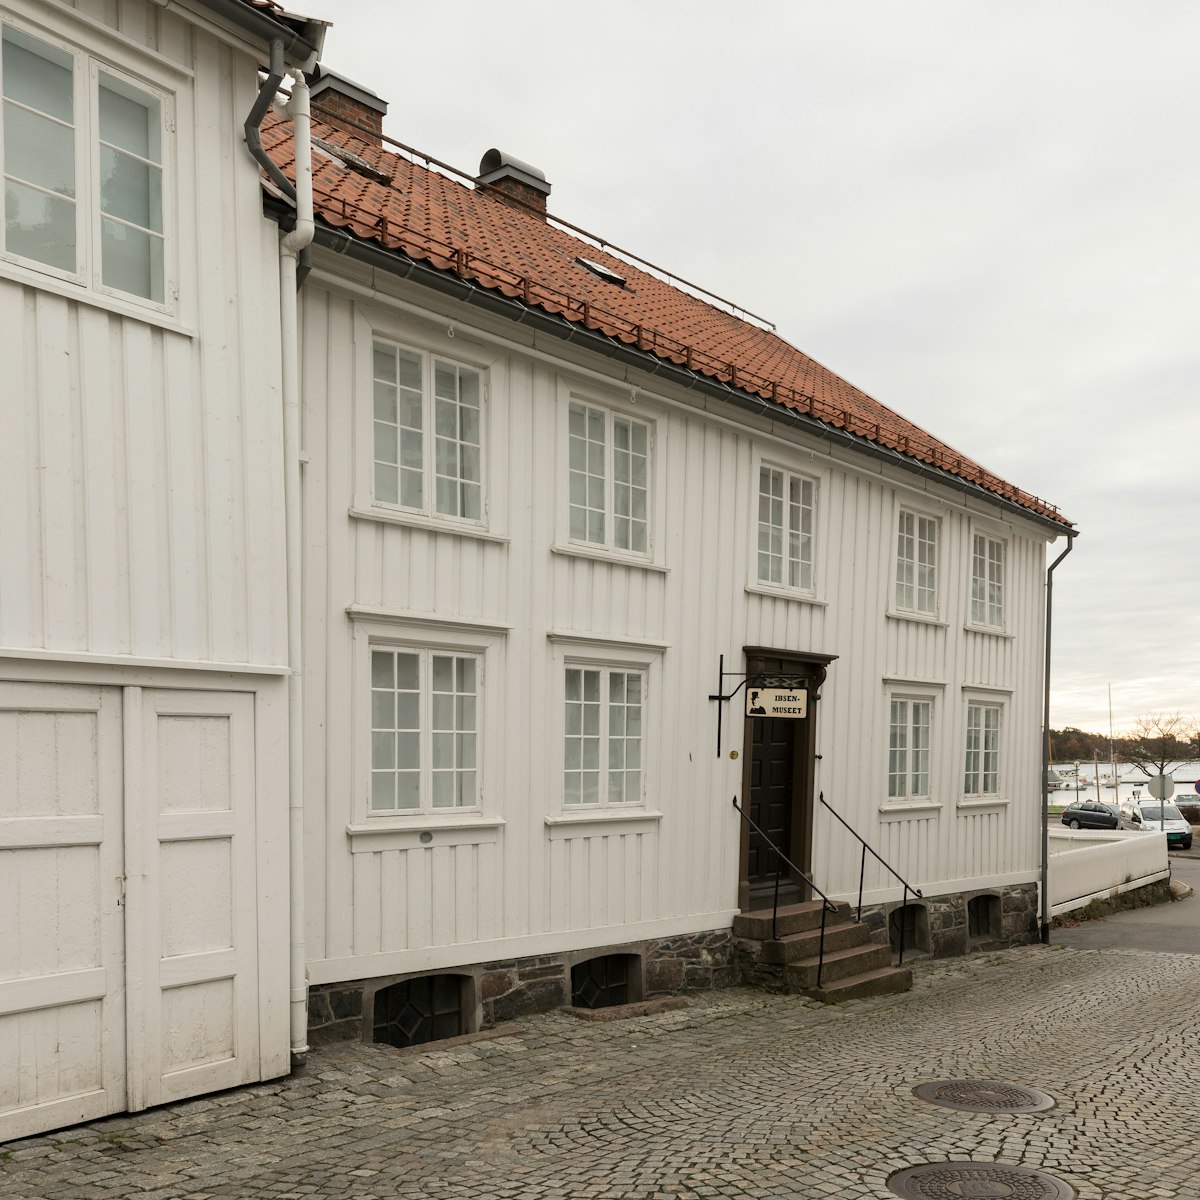 Henrik Ibsen museum in Grimstad.